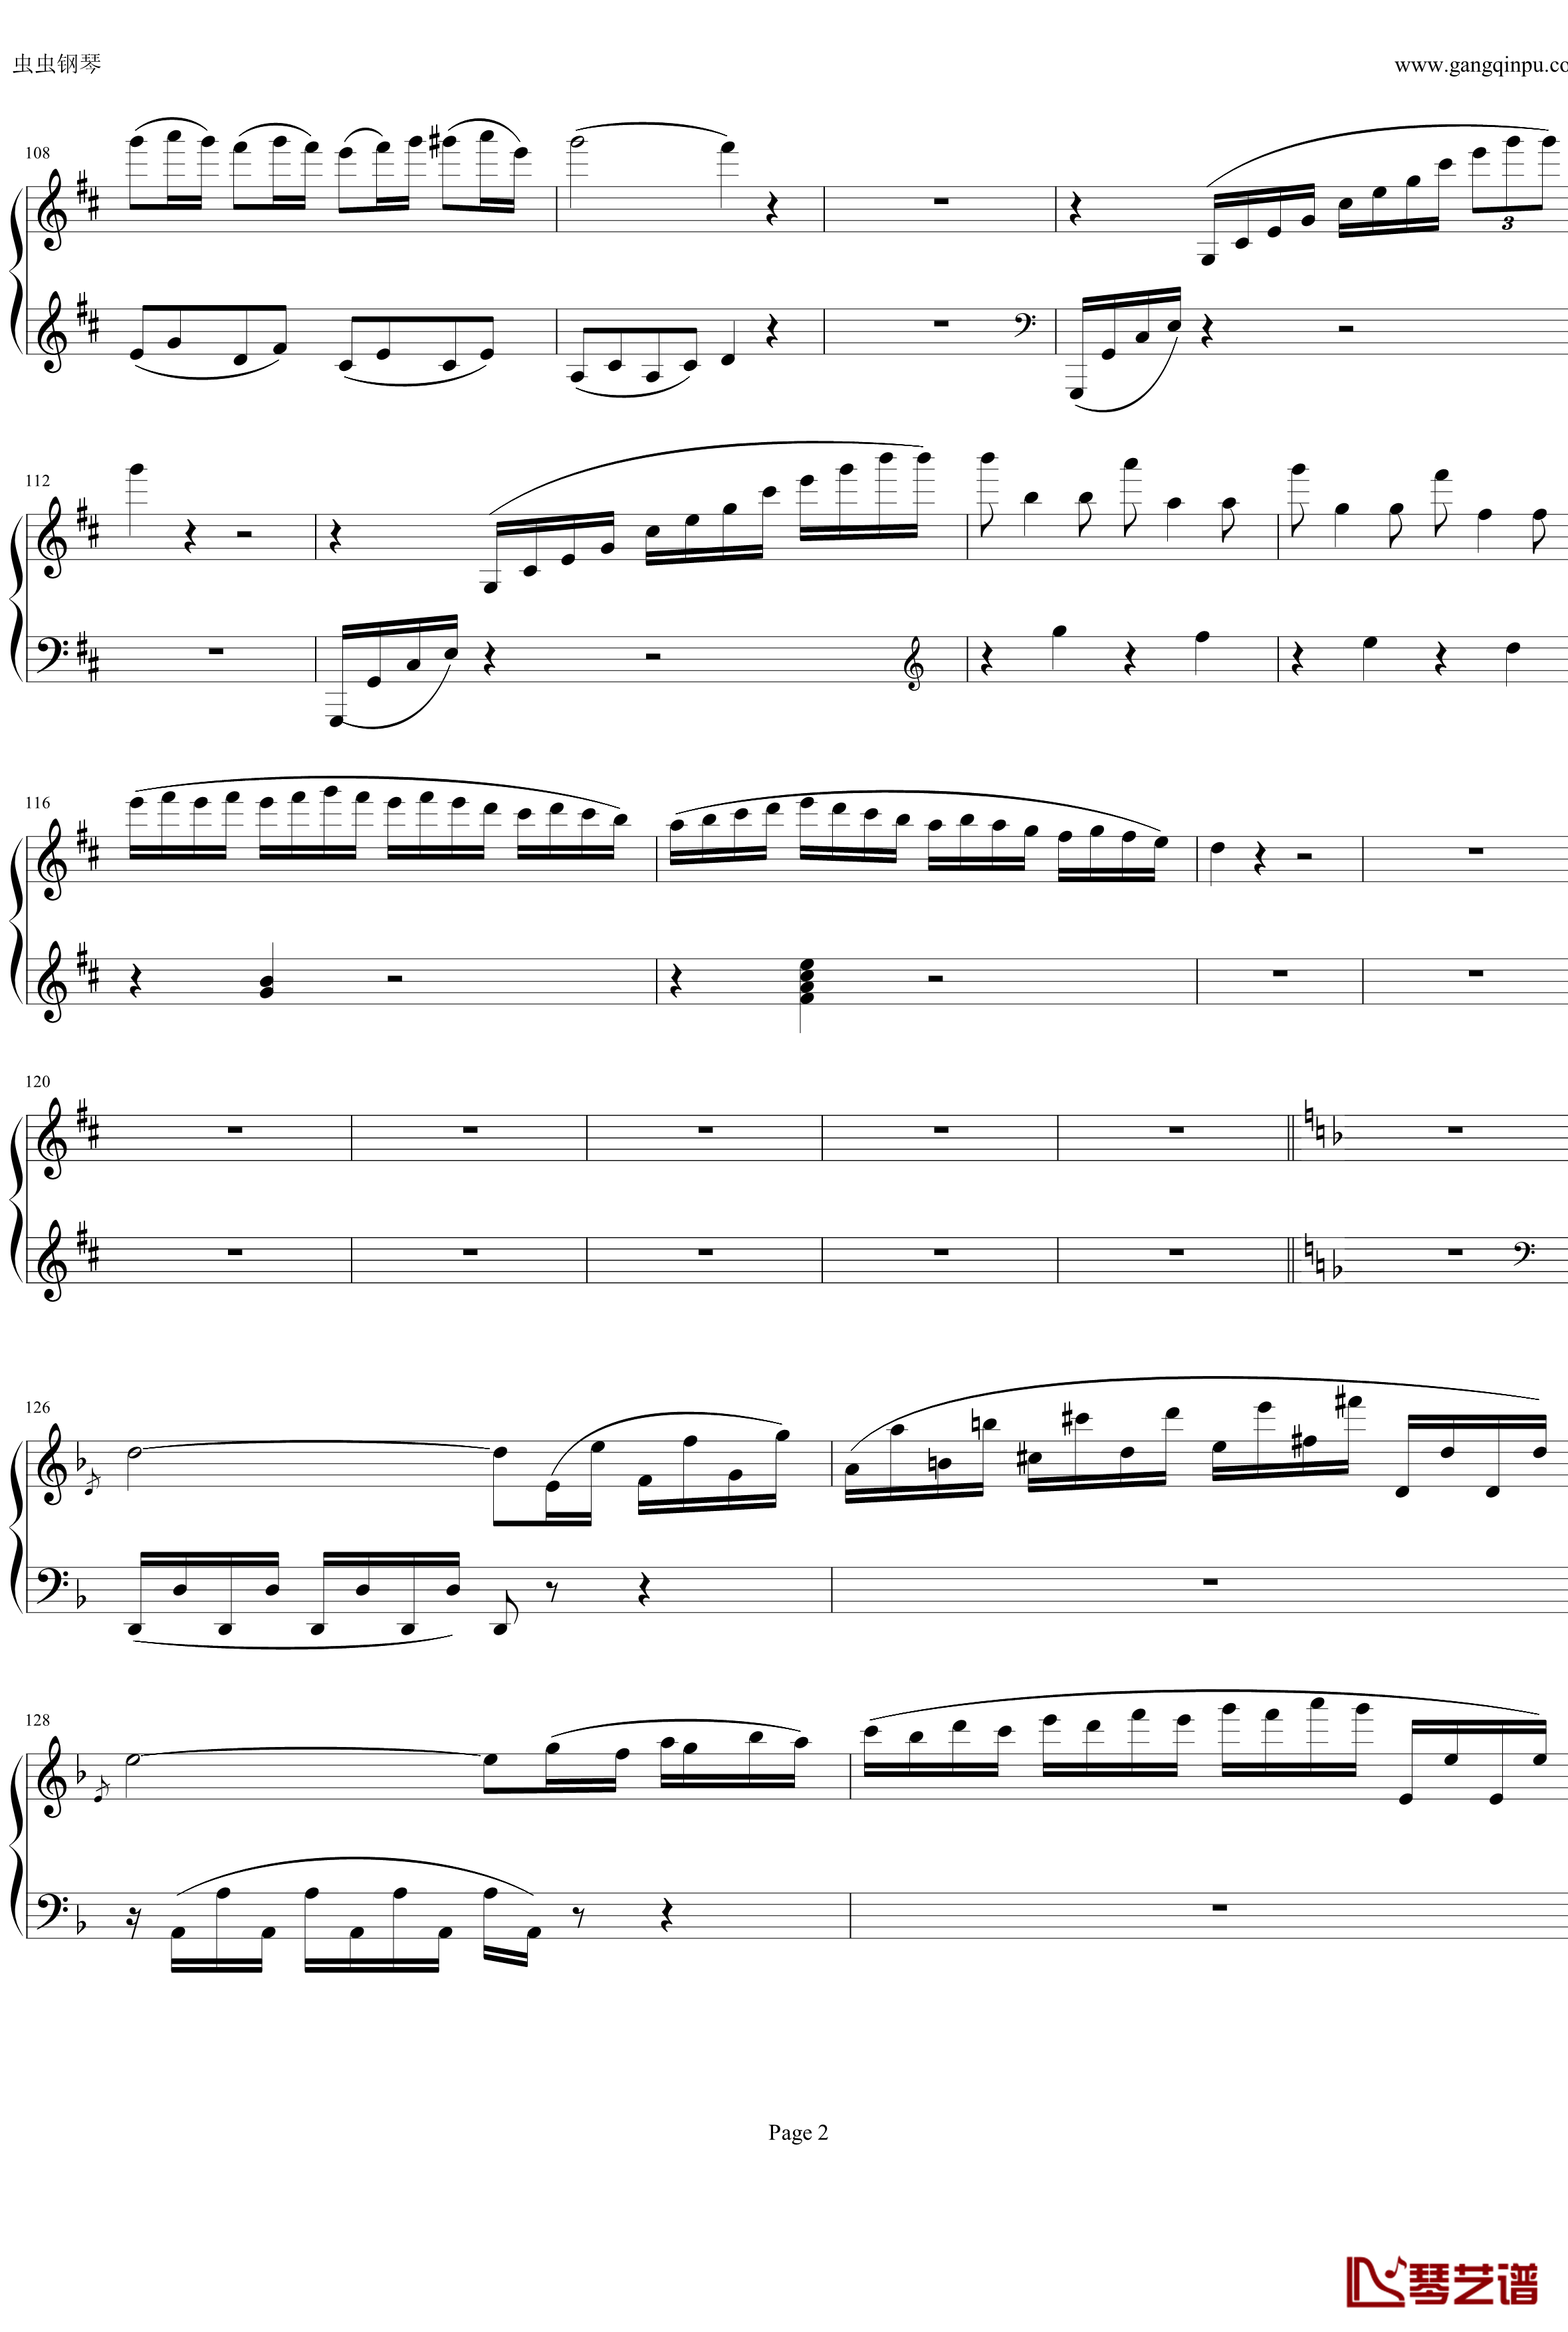 钢琴协奏曲Op61第一乐章钢琴谱-贝多芬-beethoven2